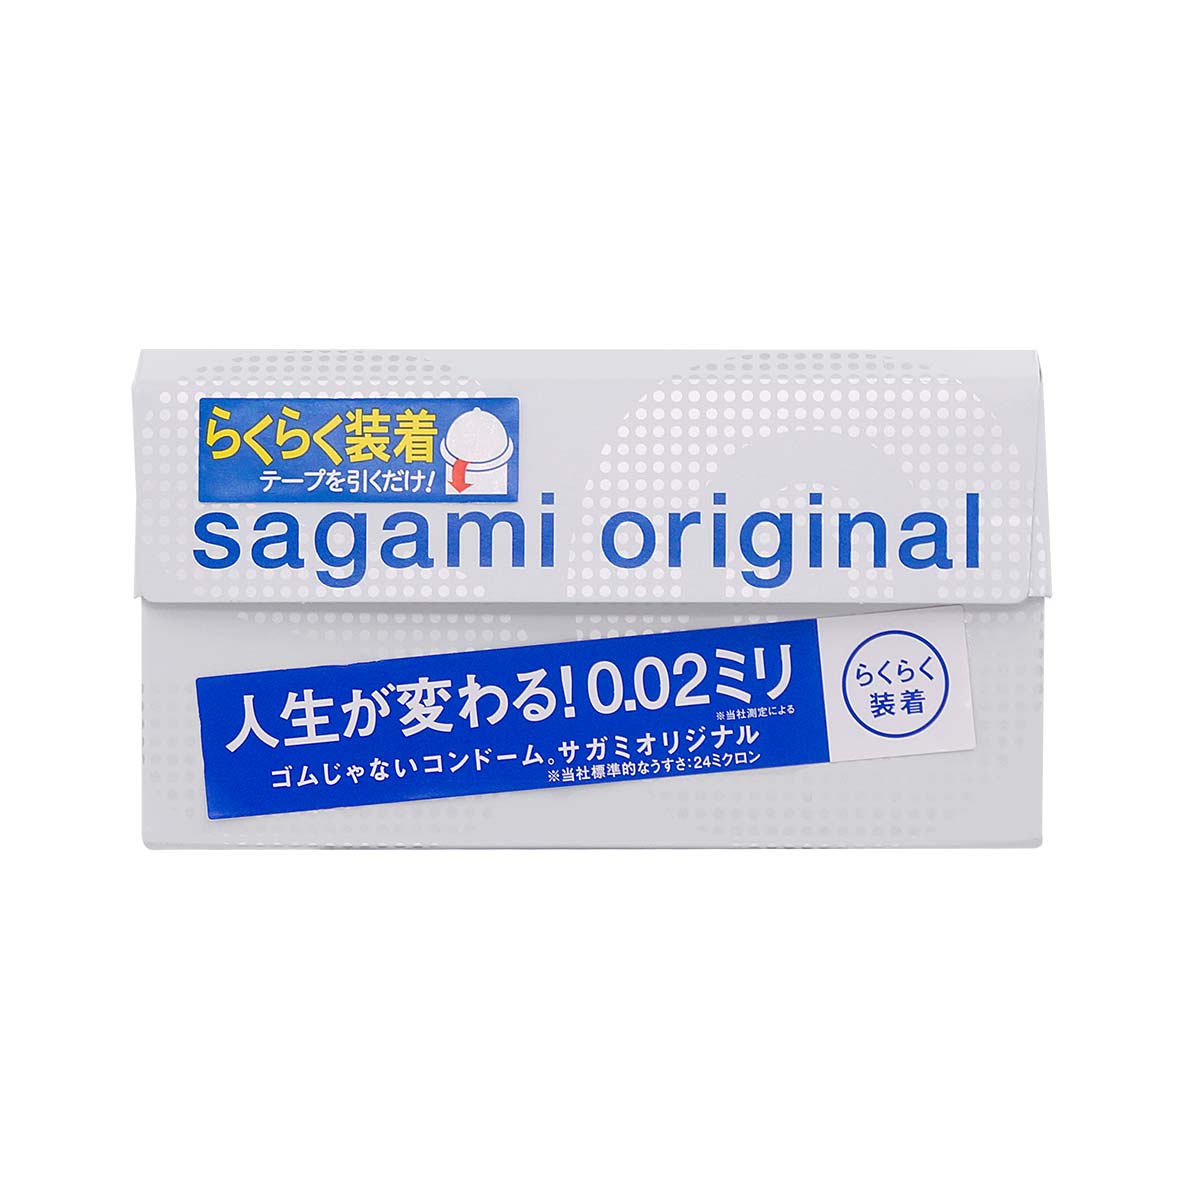 Sagami Original 0.02 Quick (2nd generation) 6's Pack PU Condom-p_2